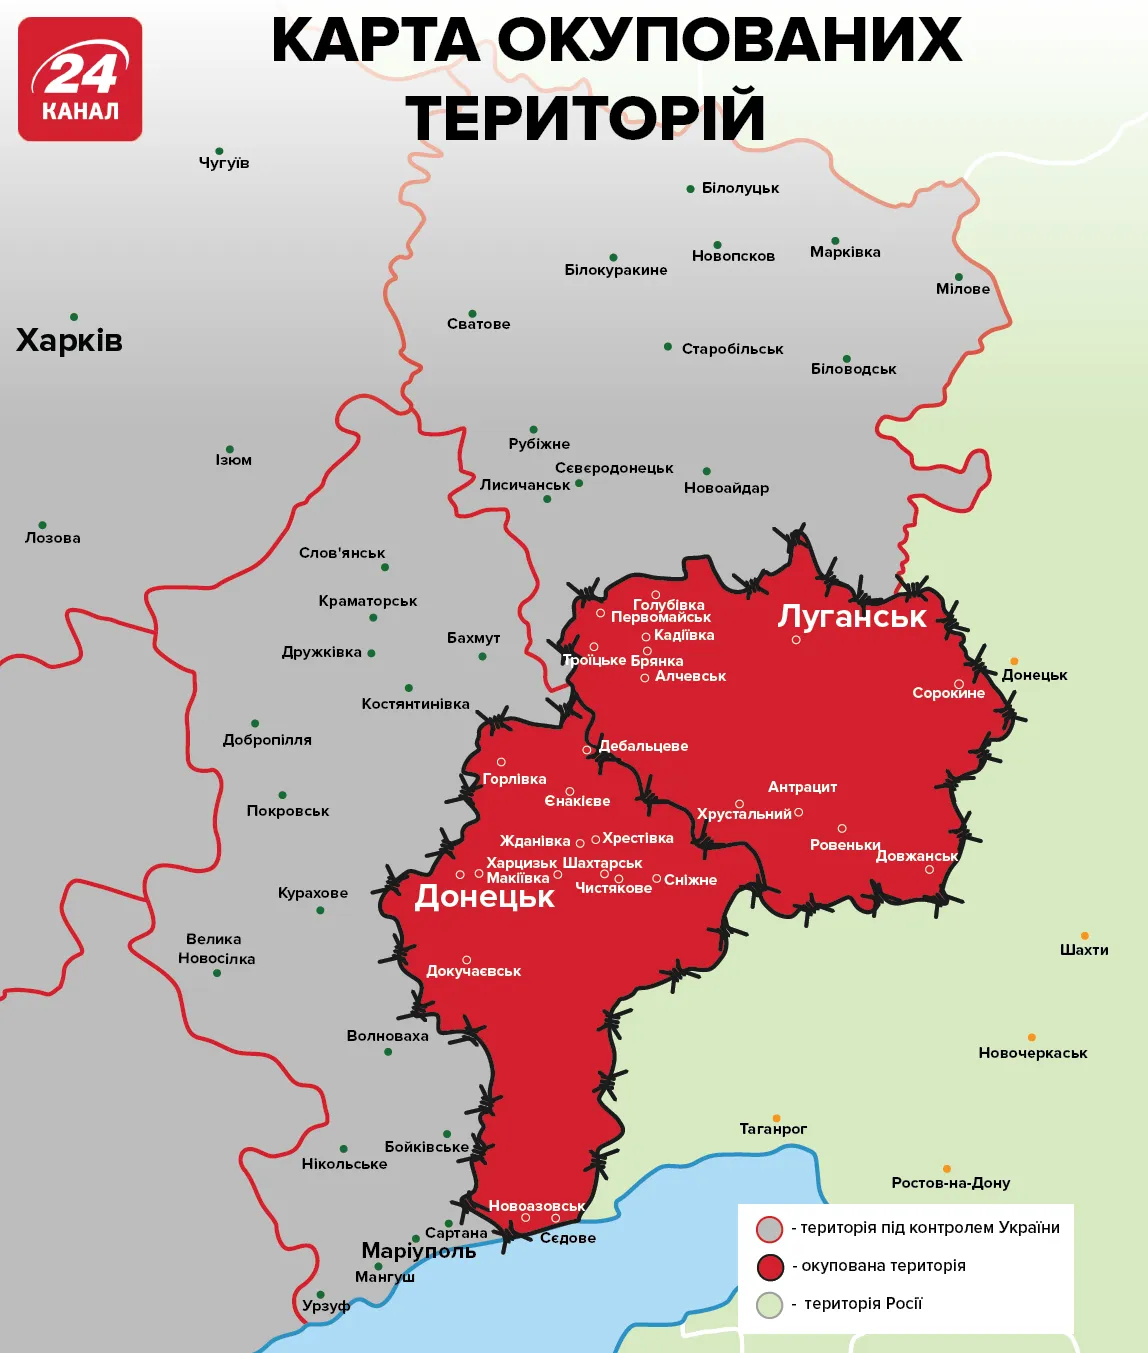 Україна, окуповані території, Луганська область, Донецька область 